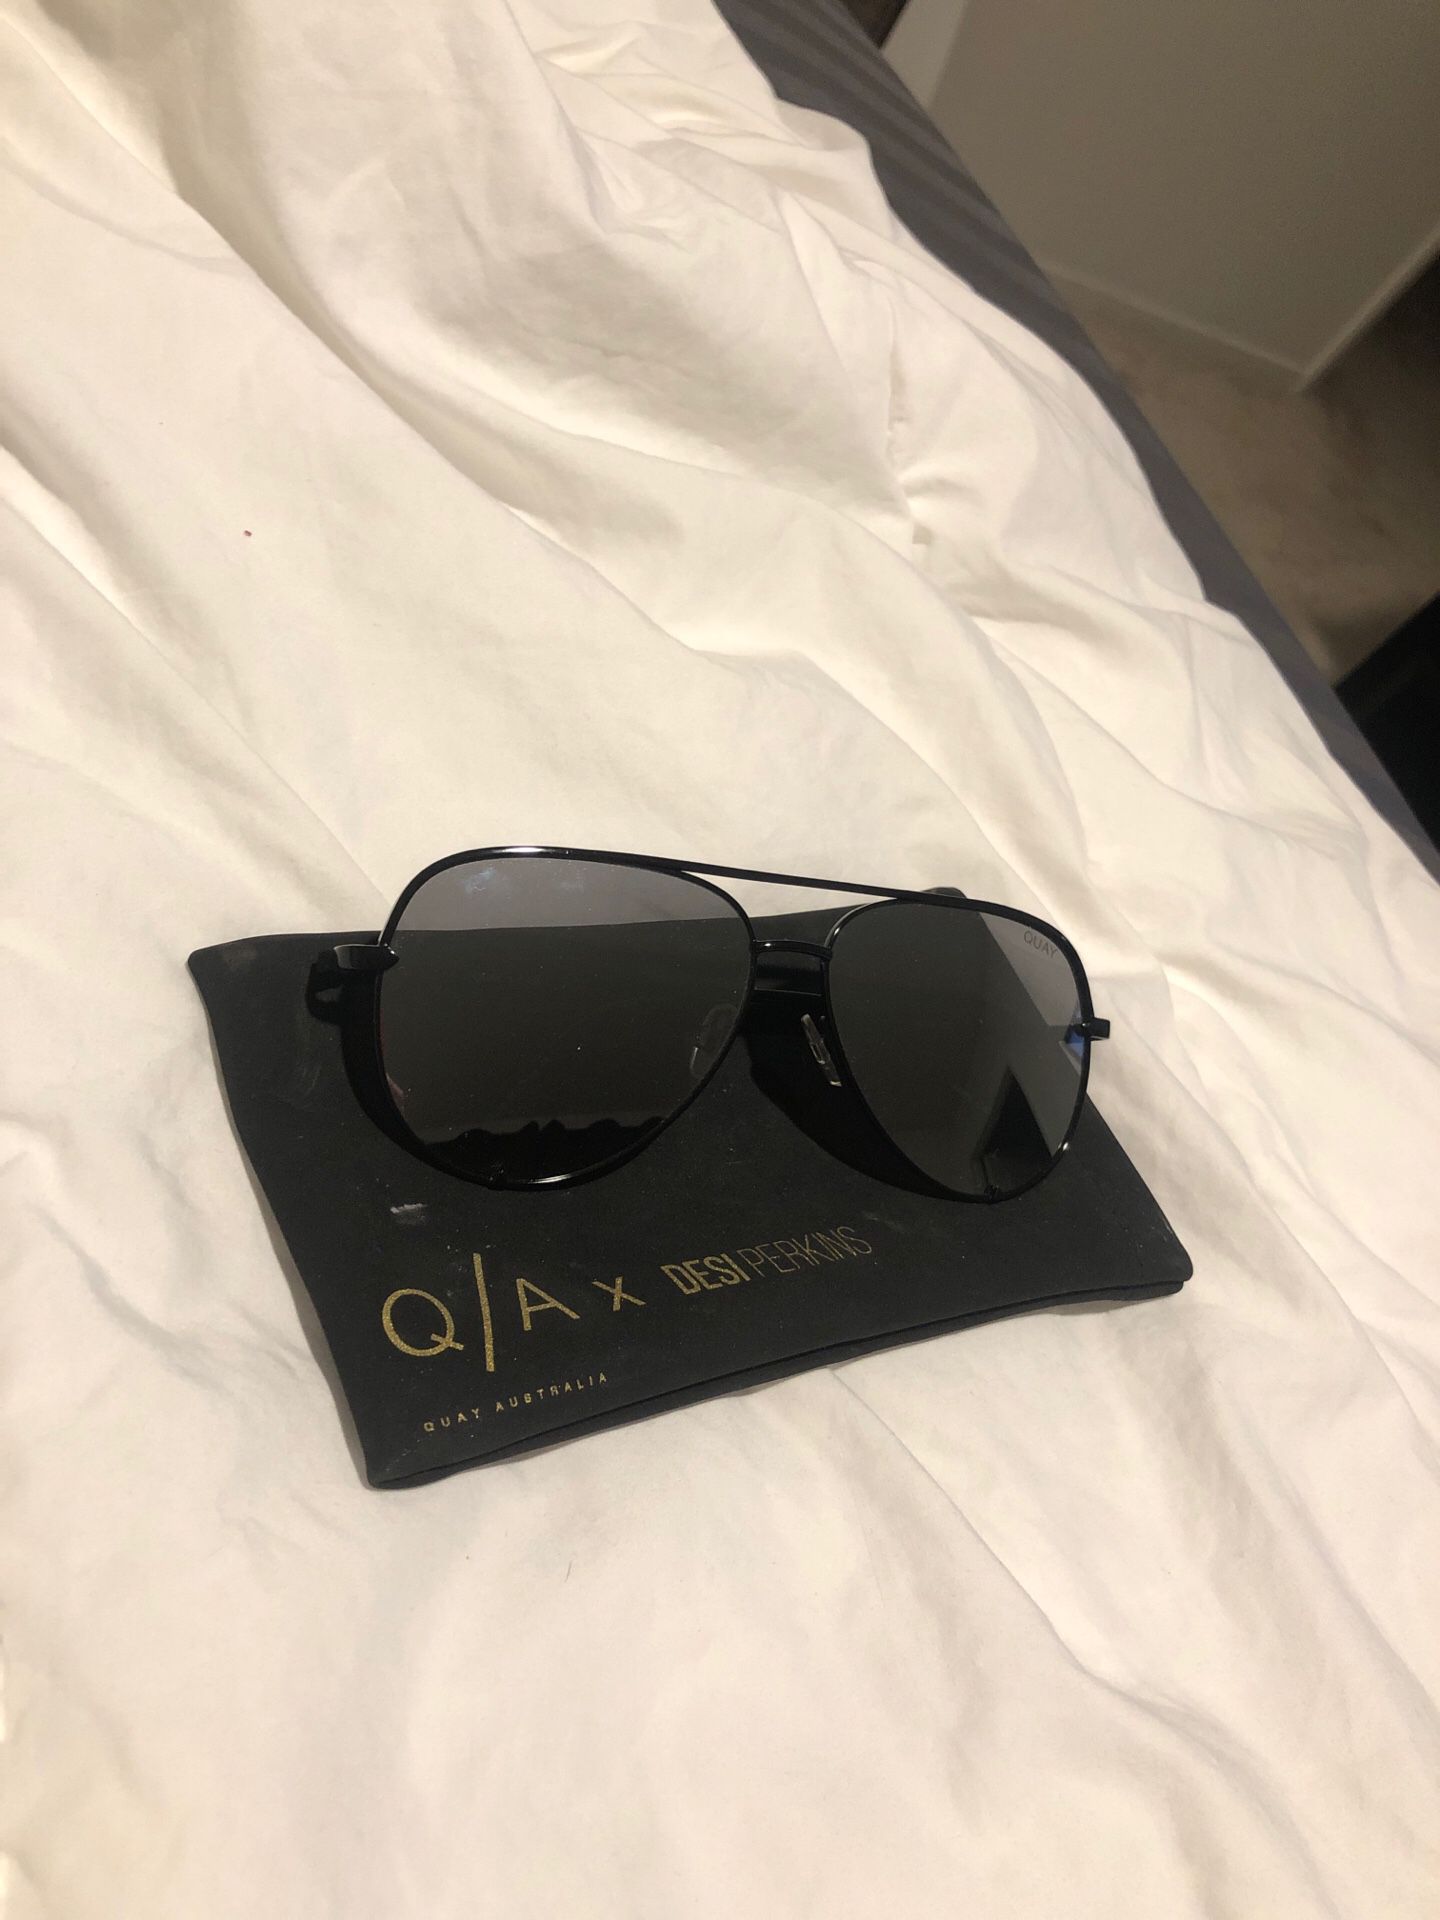 Quay High key sunglasses